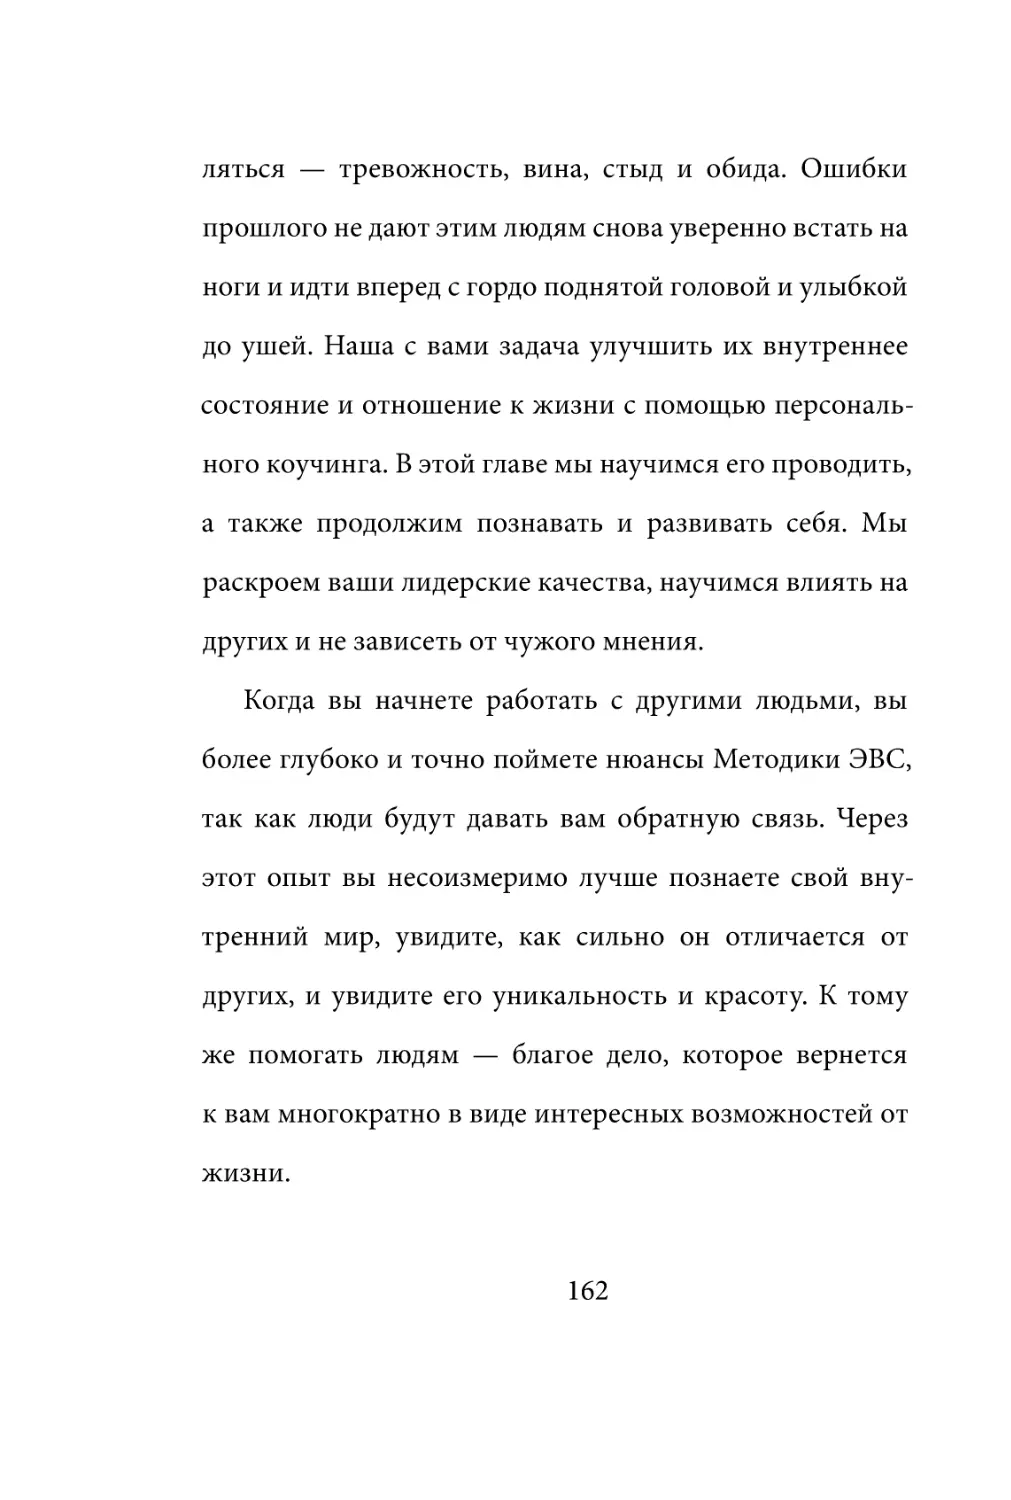 Sergey_Filippov_Dnevnik_samorazvitia_Evolyutsia_Vnutrennego_Sostoyania_162.pdf (p.162)